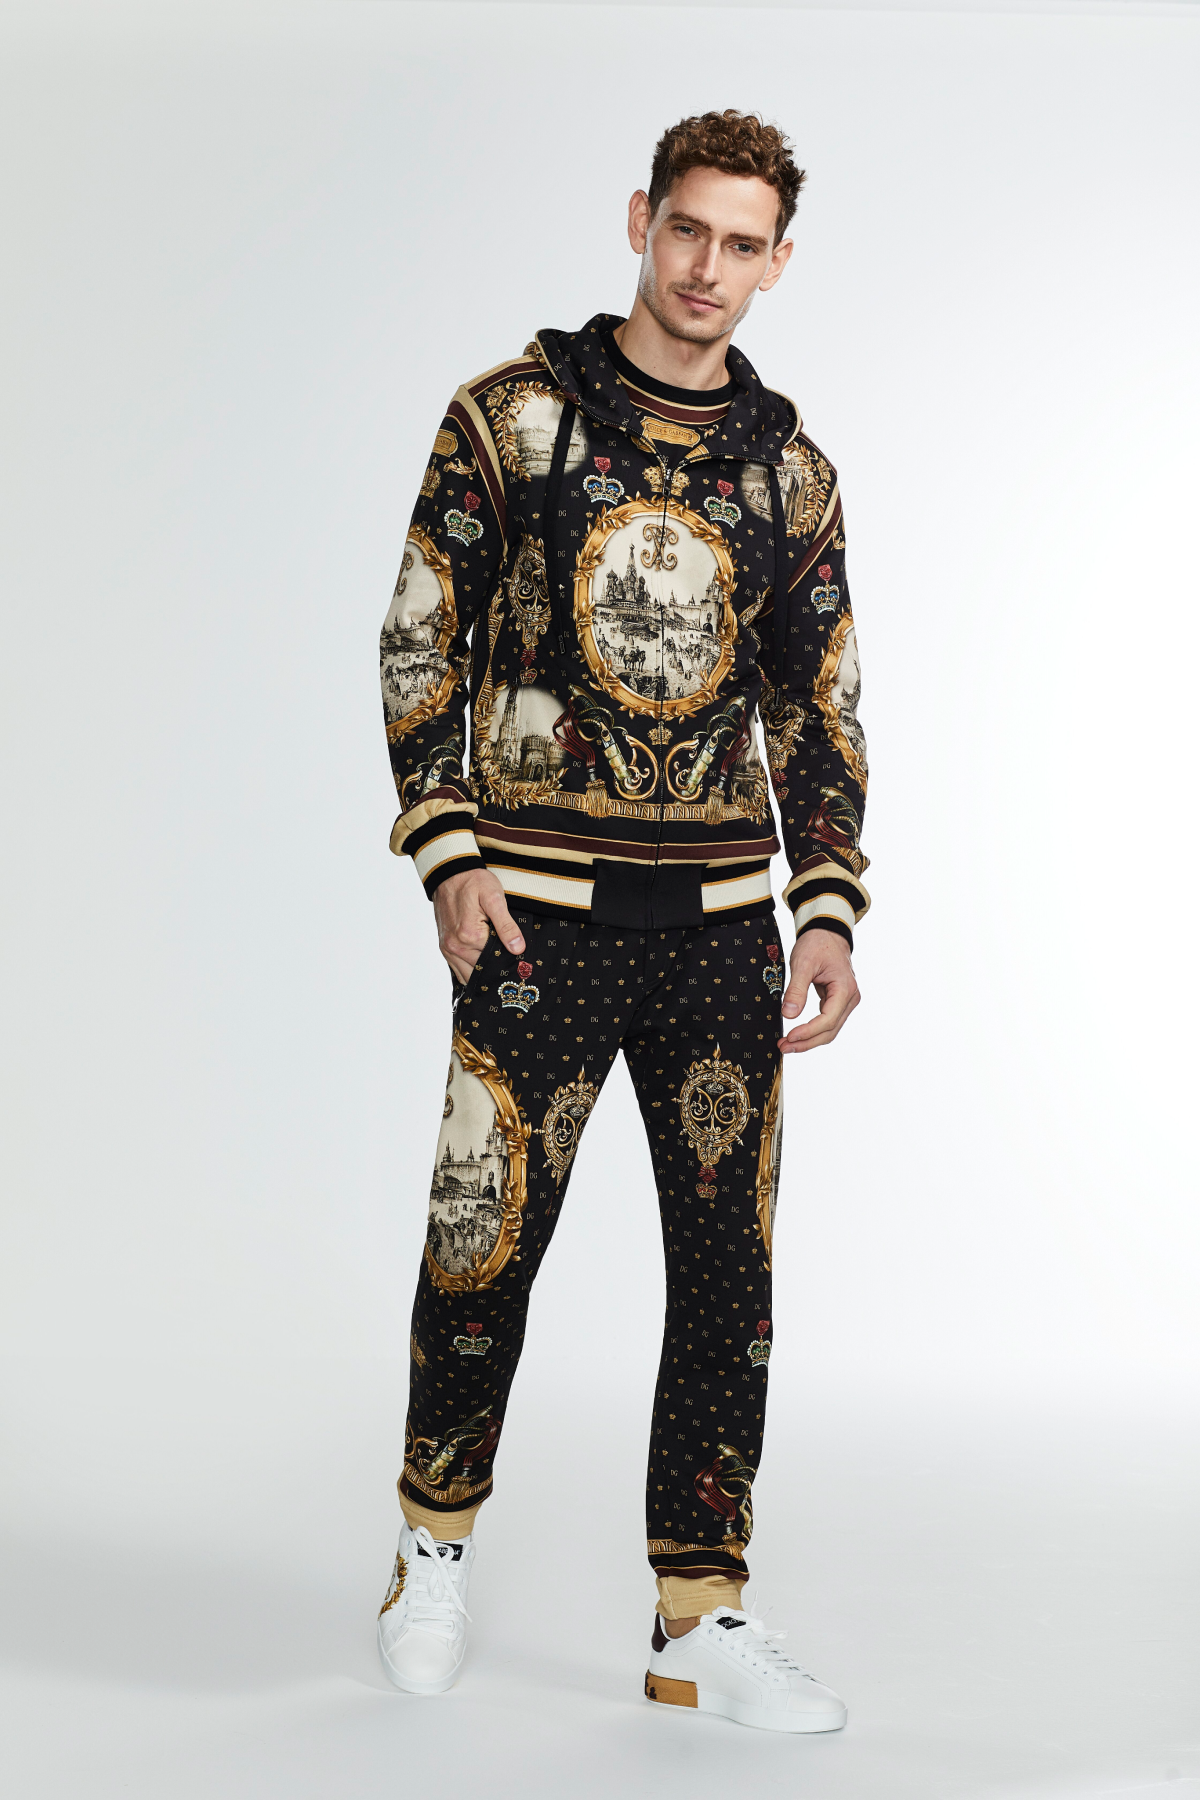 Dolce&Gabbana представил мужскую коллекцию, созданную специально для российского рынка (фото 2)